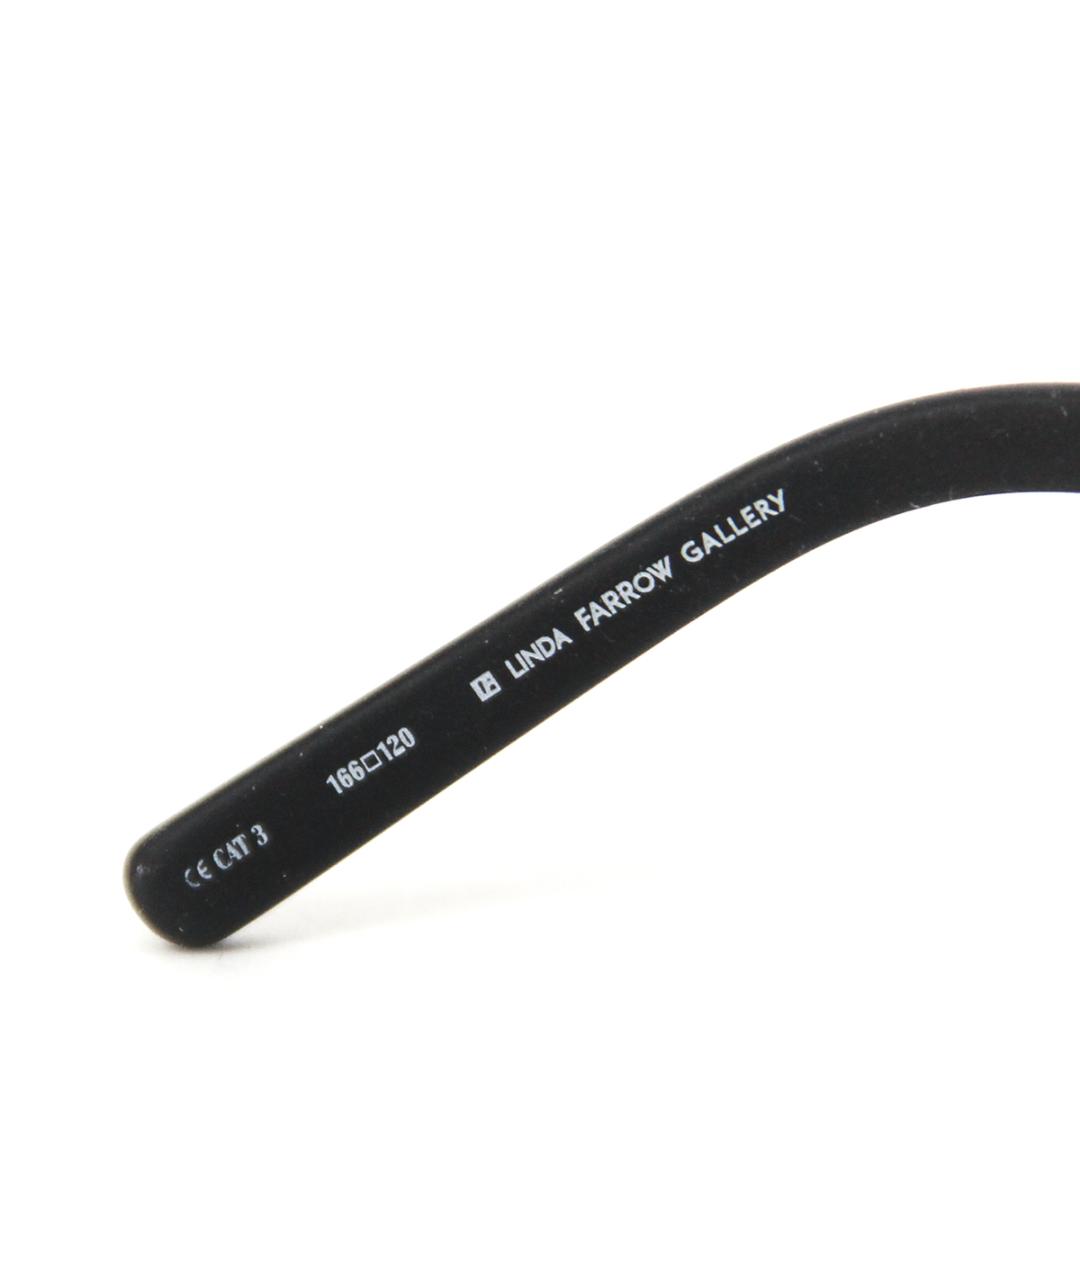 LINDA FARROW Черные пластиковые солнцезащитные очки, фото 5